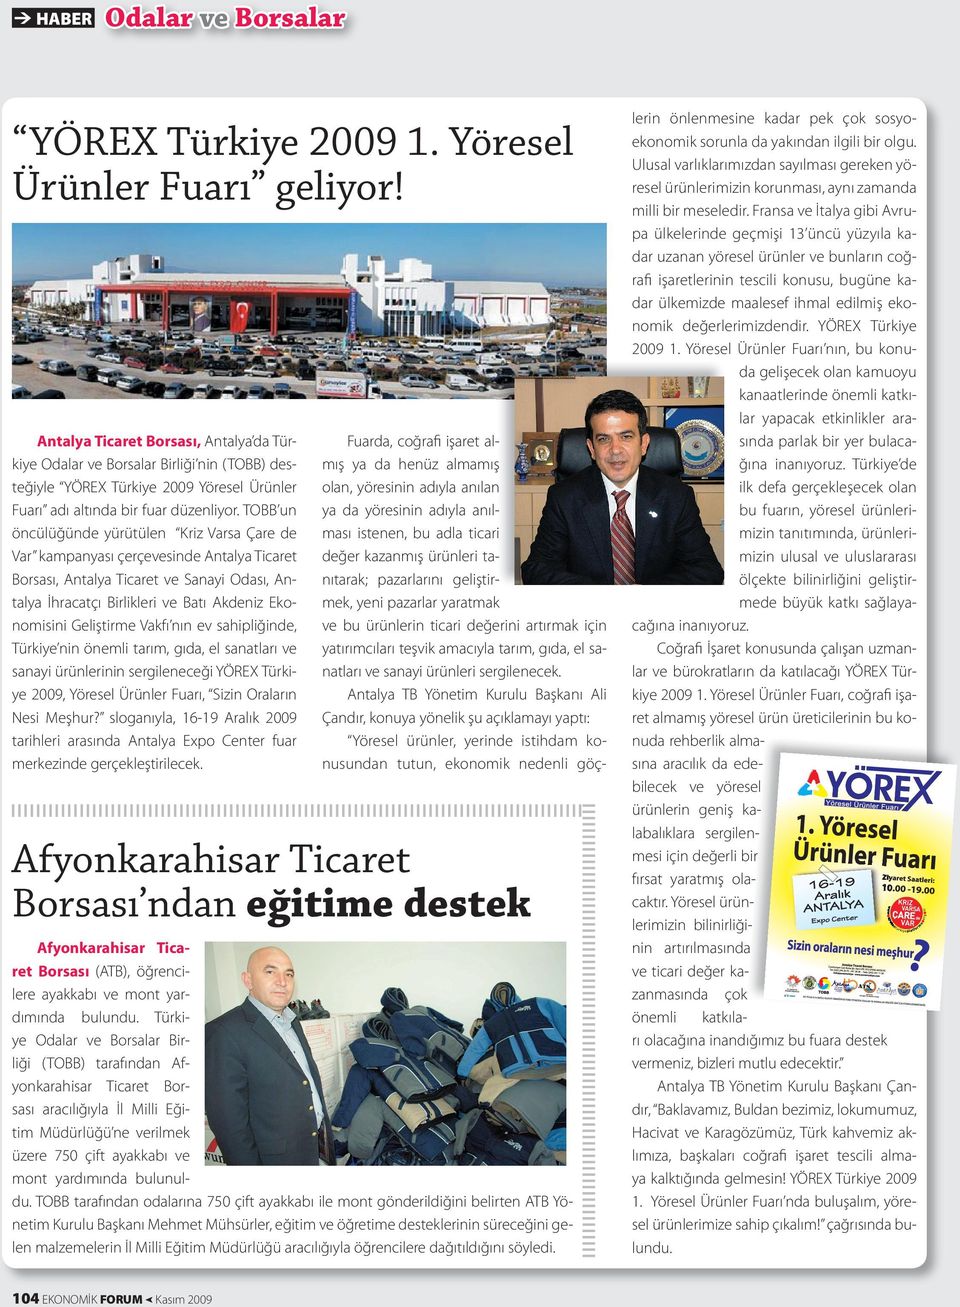 TOBB un öncülüğünde yürütülen Kriz Varsa Çare de Var kampanyası çerçevesinde Antalya Ticaret Borsası, Antalya Ticaret ve Sanayi Odası, Antalya İhracatçı Birlikleri ve Batı Akdeniz Ekonomisini